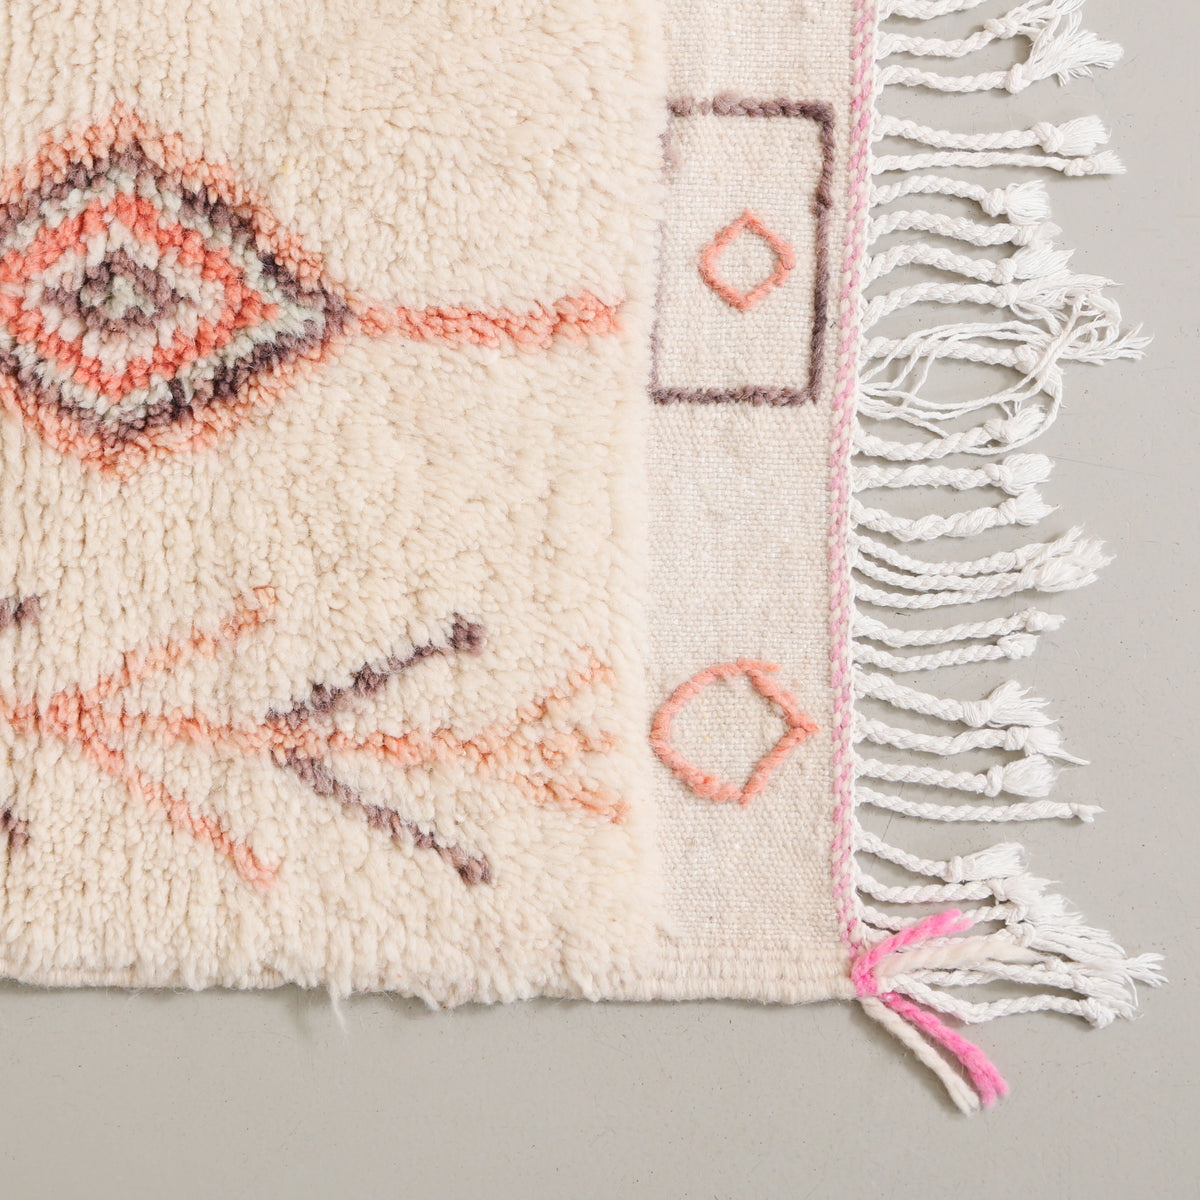 dettaglio dell'angolo e della frangia ricamata di un tappeto realizzato a mano in lana